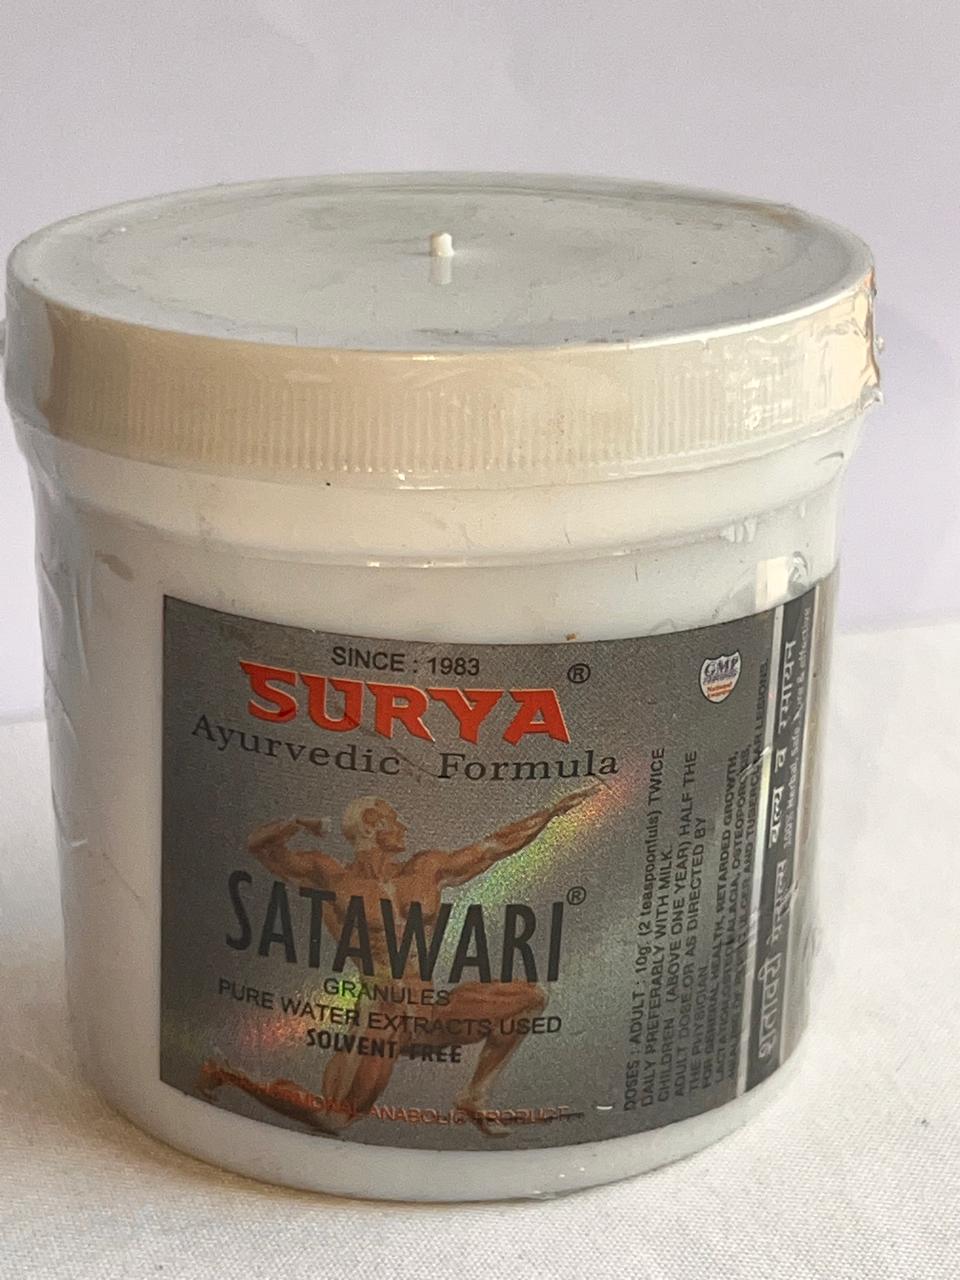 Satawari granules (Natural Herbal Protein)